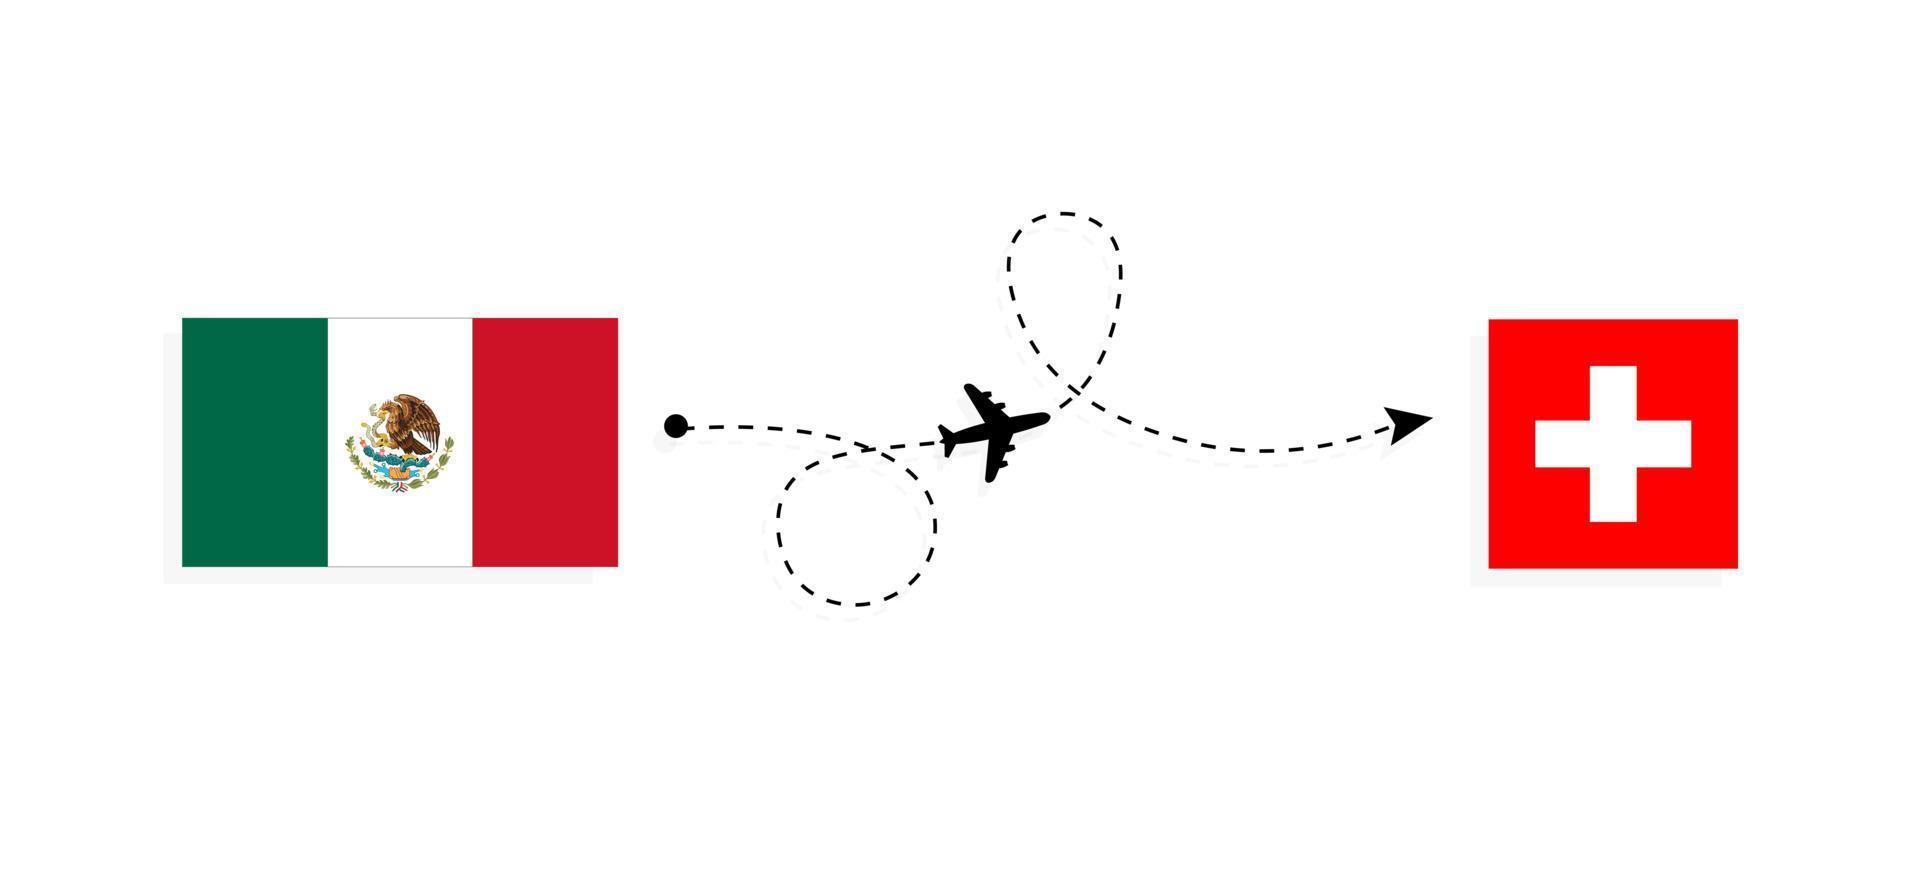 flyg och resor från Mexiko till Schweiz med resekoncept för passagerarflygplan vektor